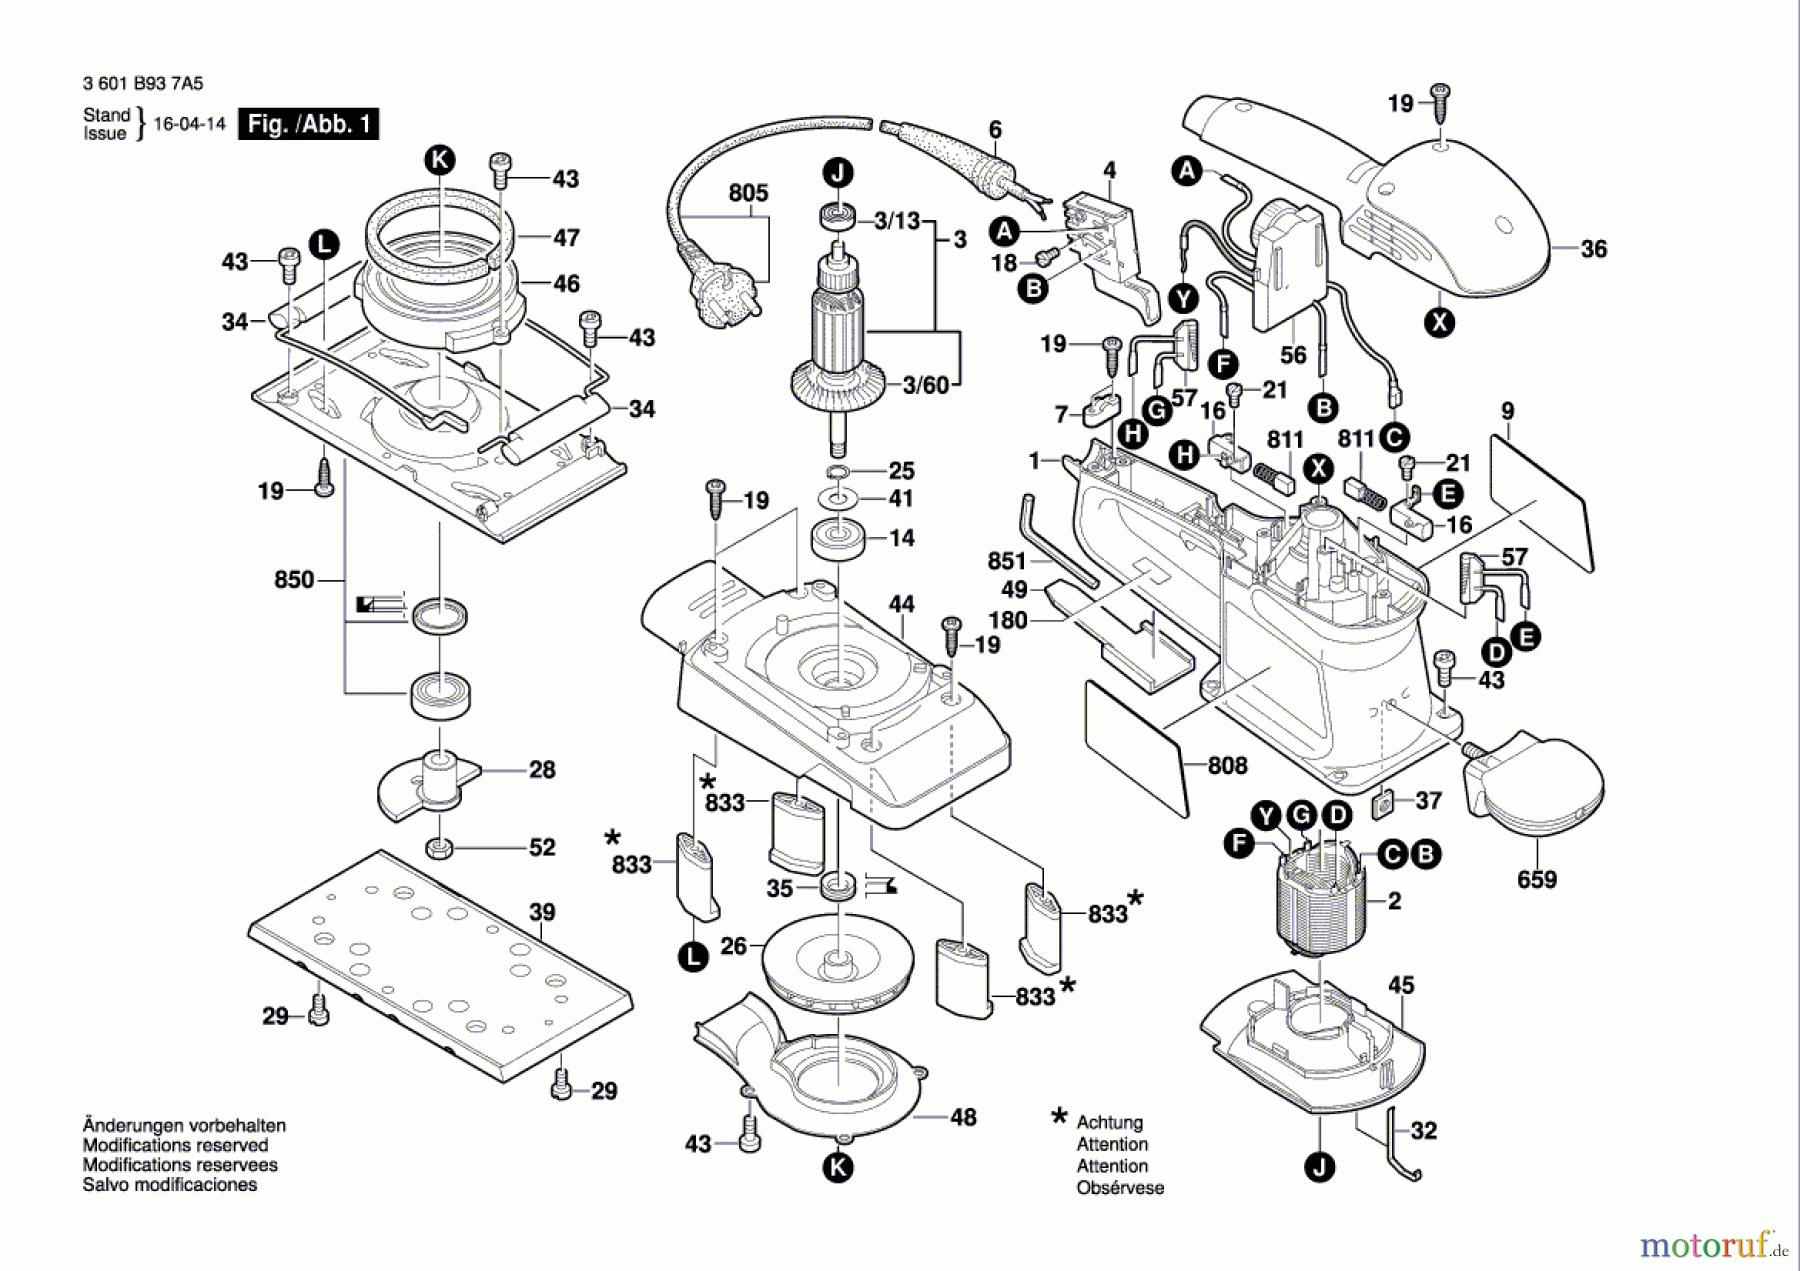  Bosch Werkzeug Schwingschleifer BOS 280 Seite 1